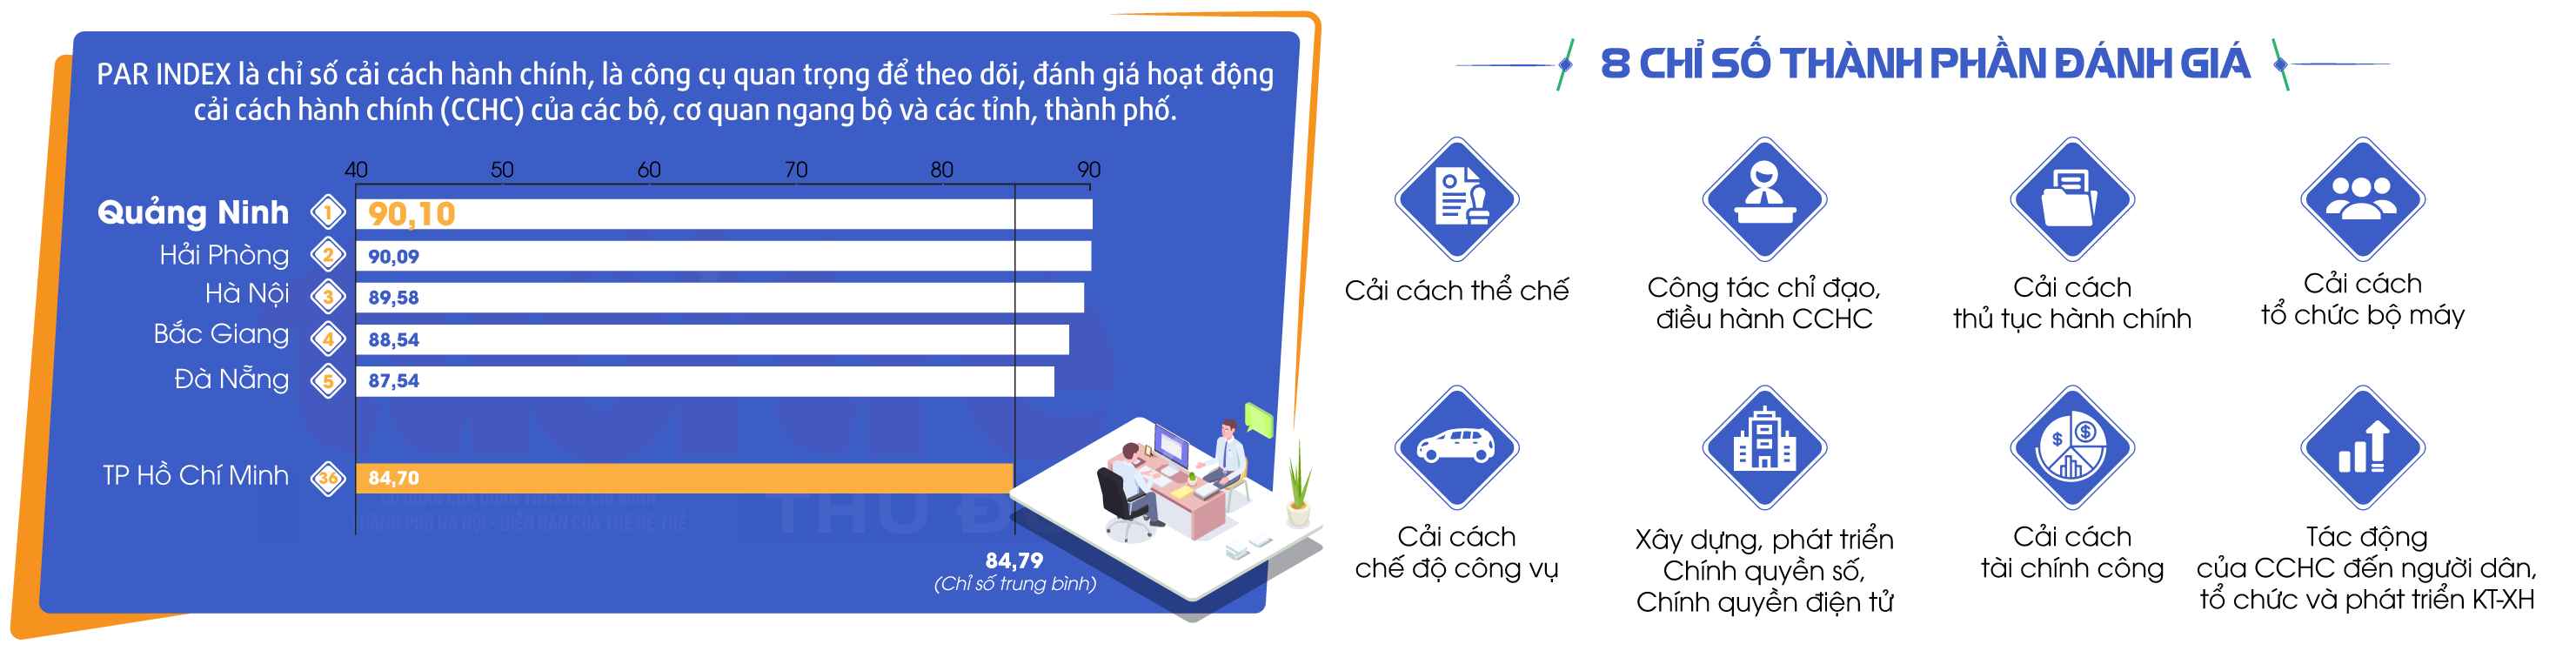 PAR-Index Quảng Ninh